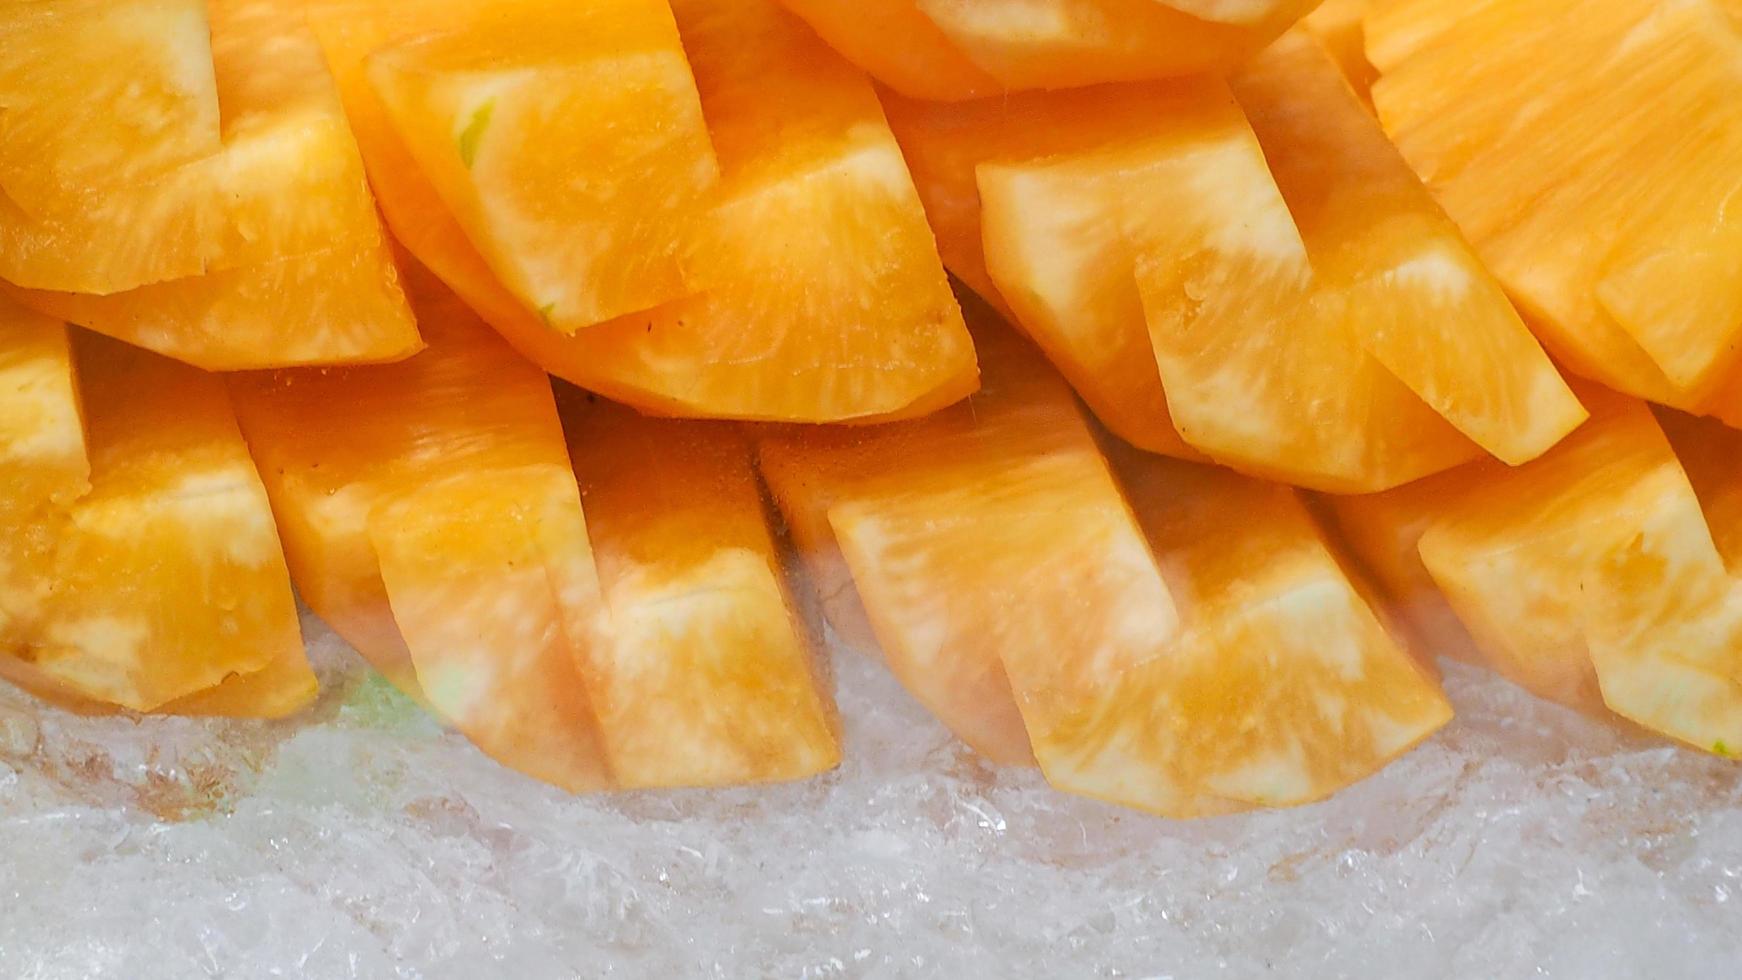 orange eller gul ananas skivad på krossad is. tropisk frukt. hälsosamt mellanmål. bromelain enzym extraherat från ananas. En källa till naturenzym hjälper till att smälta proteiner. gatumat i thailand. foto